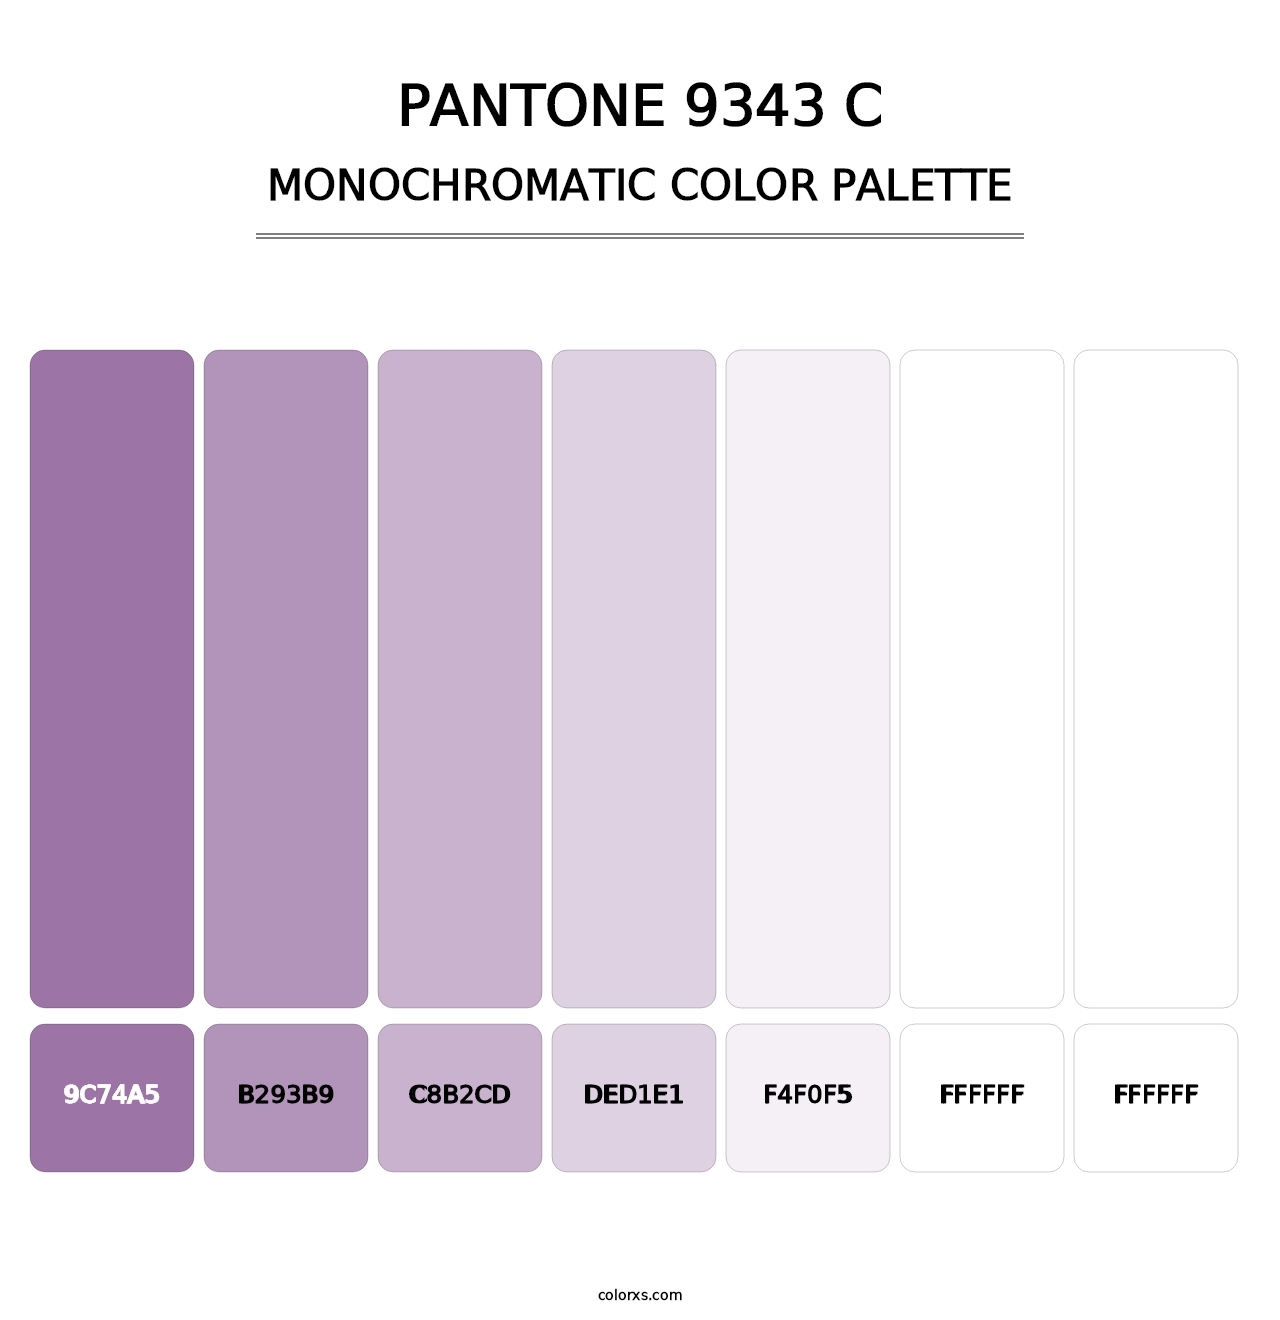 PANTONE 9343 C - Monochromatic Color Palette